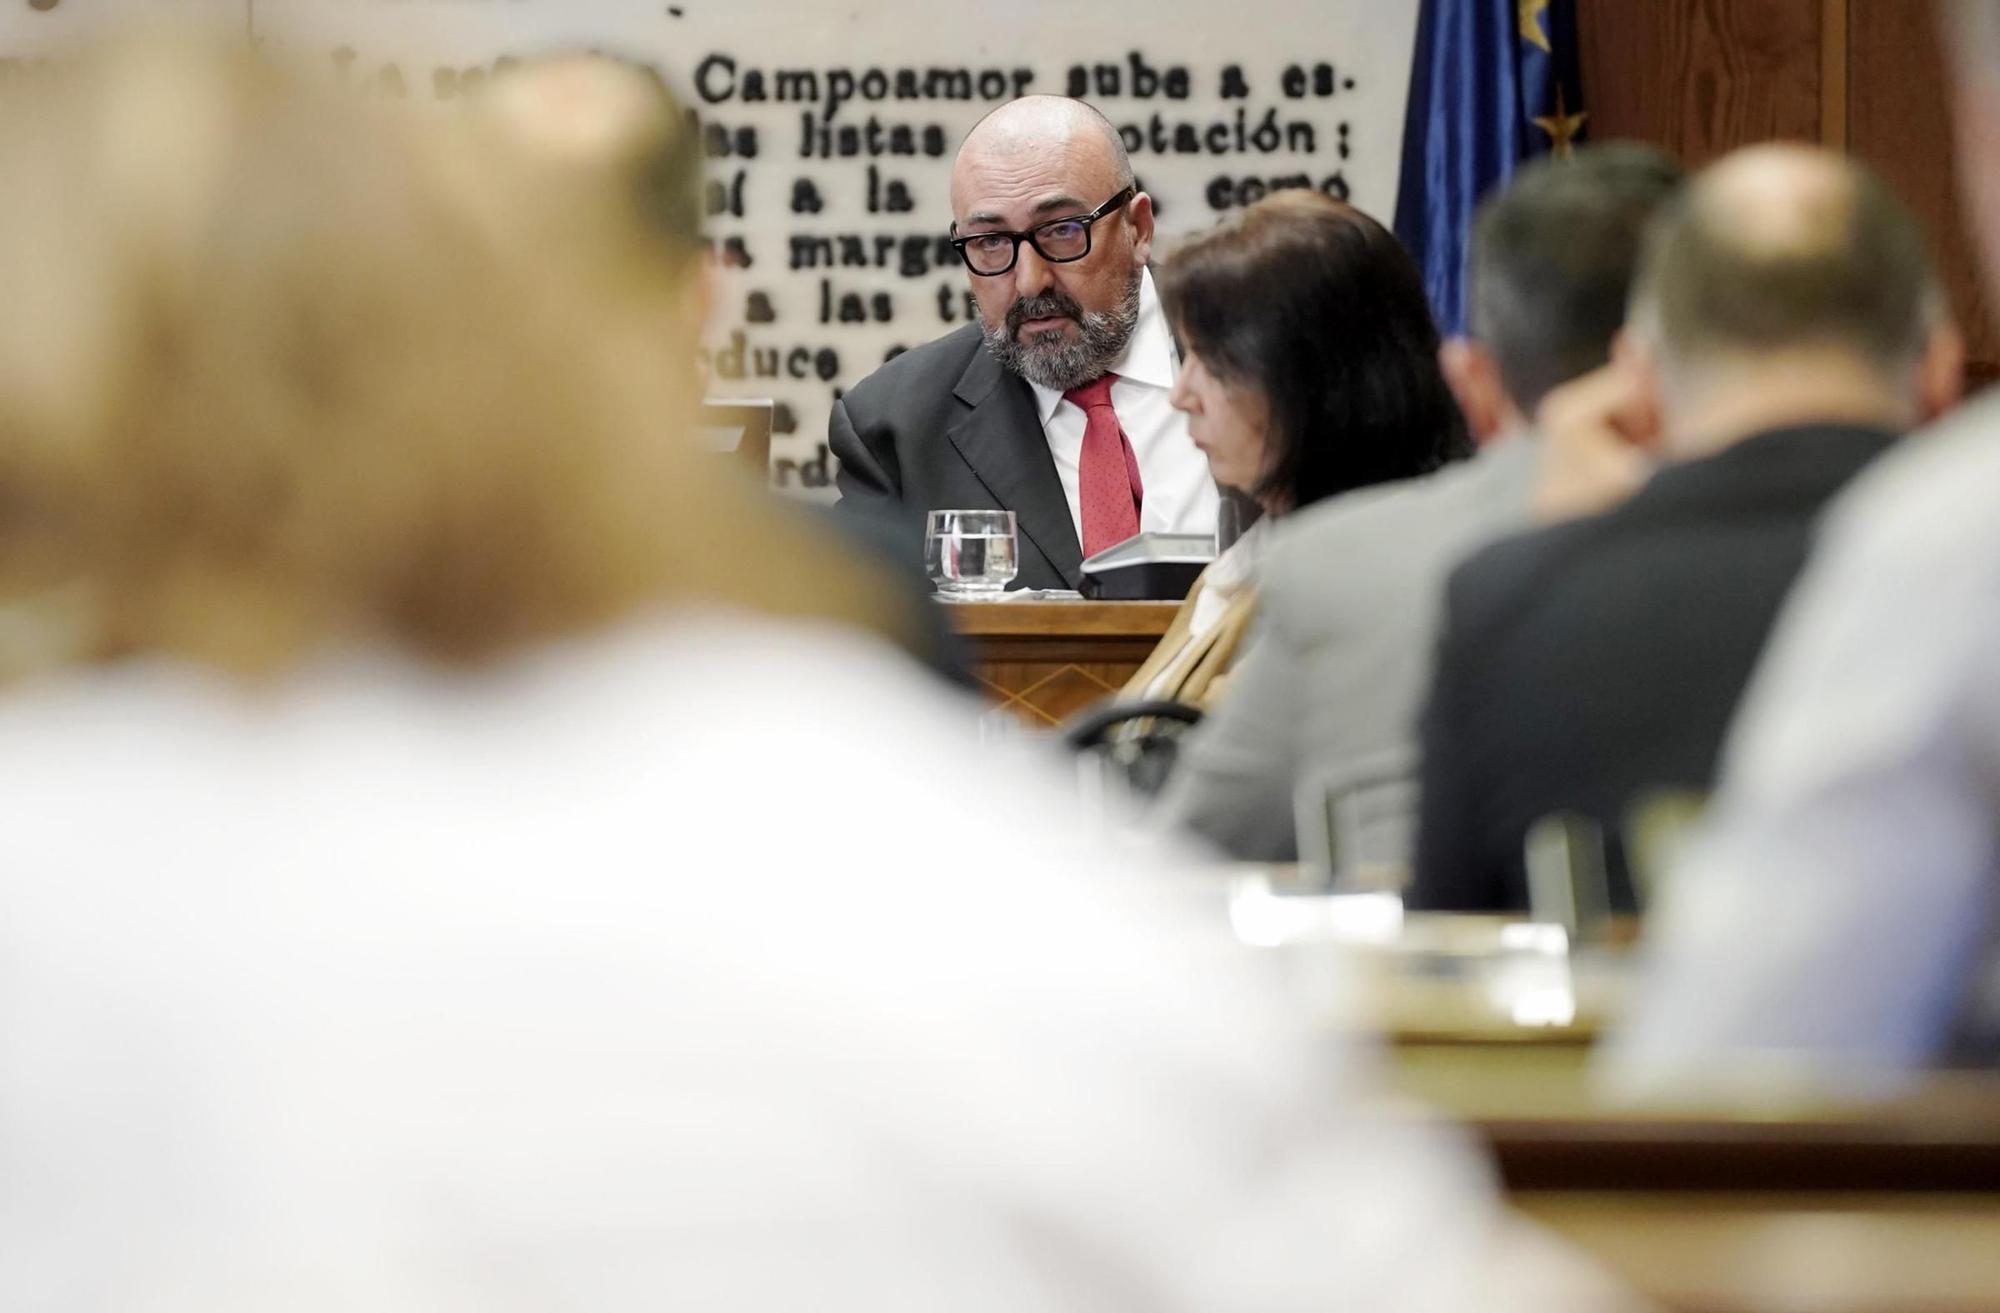 La comparecencia de Koldo García en la comisión de investigación del Senado, en imágenes